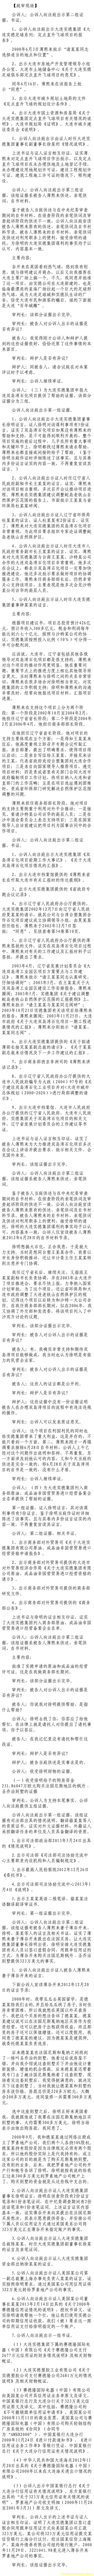 济南市中级法院官方微博公布的8月22日庭审现场记录（10）